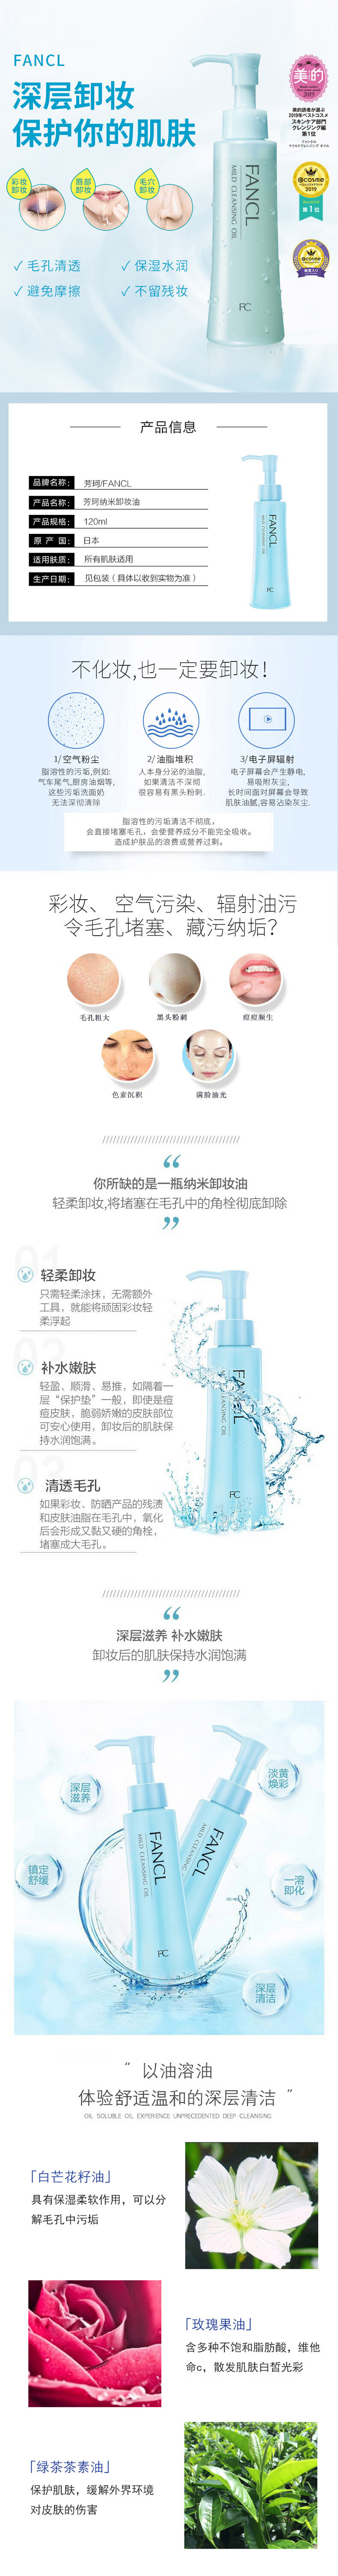 日本进口 芳珂（FANCL）纳米卸妆油 120ml 温和无刺激深层清洁毛孔 敏感肌可用 (专柜版) 进口超市